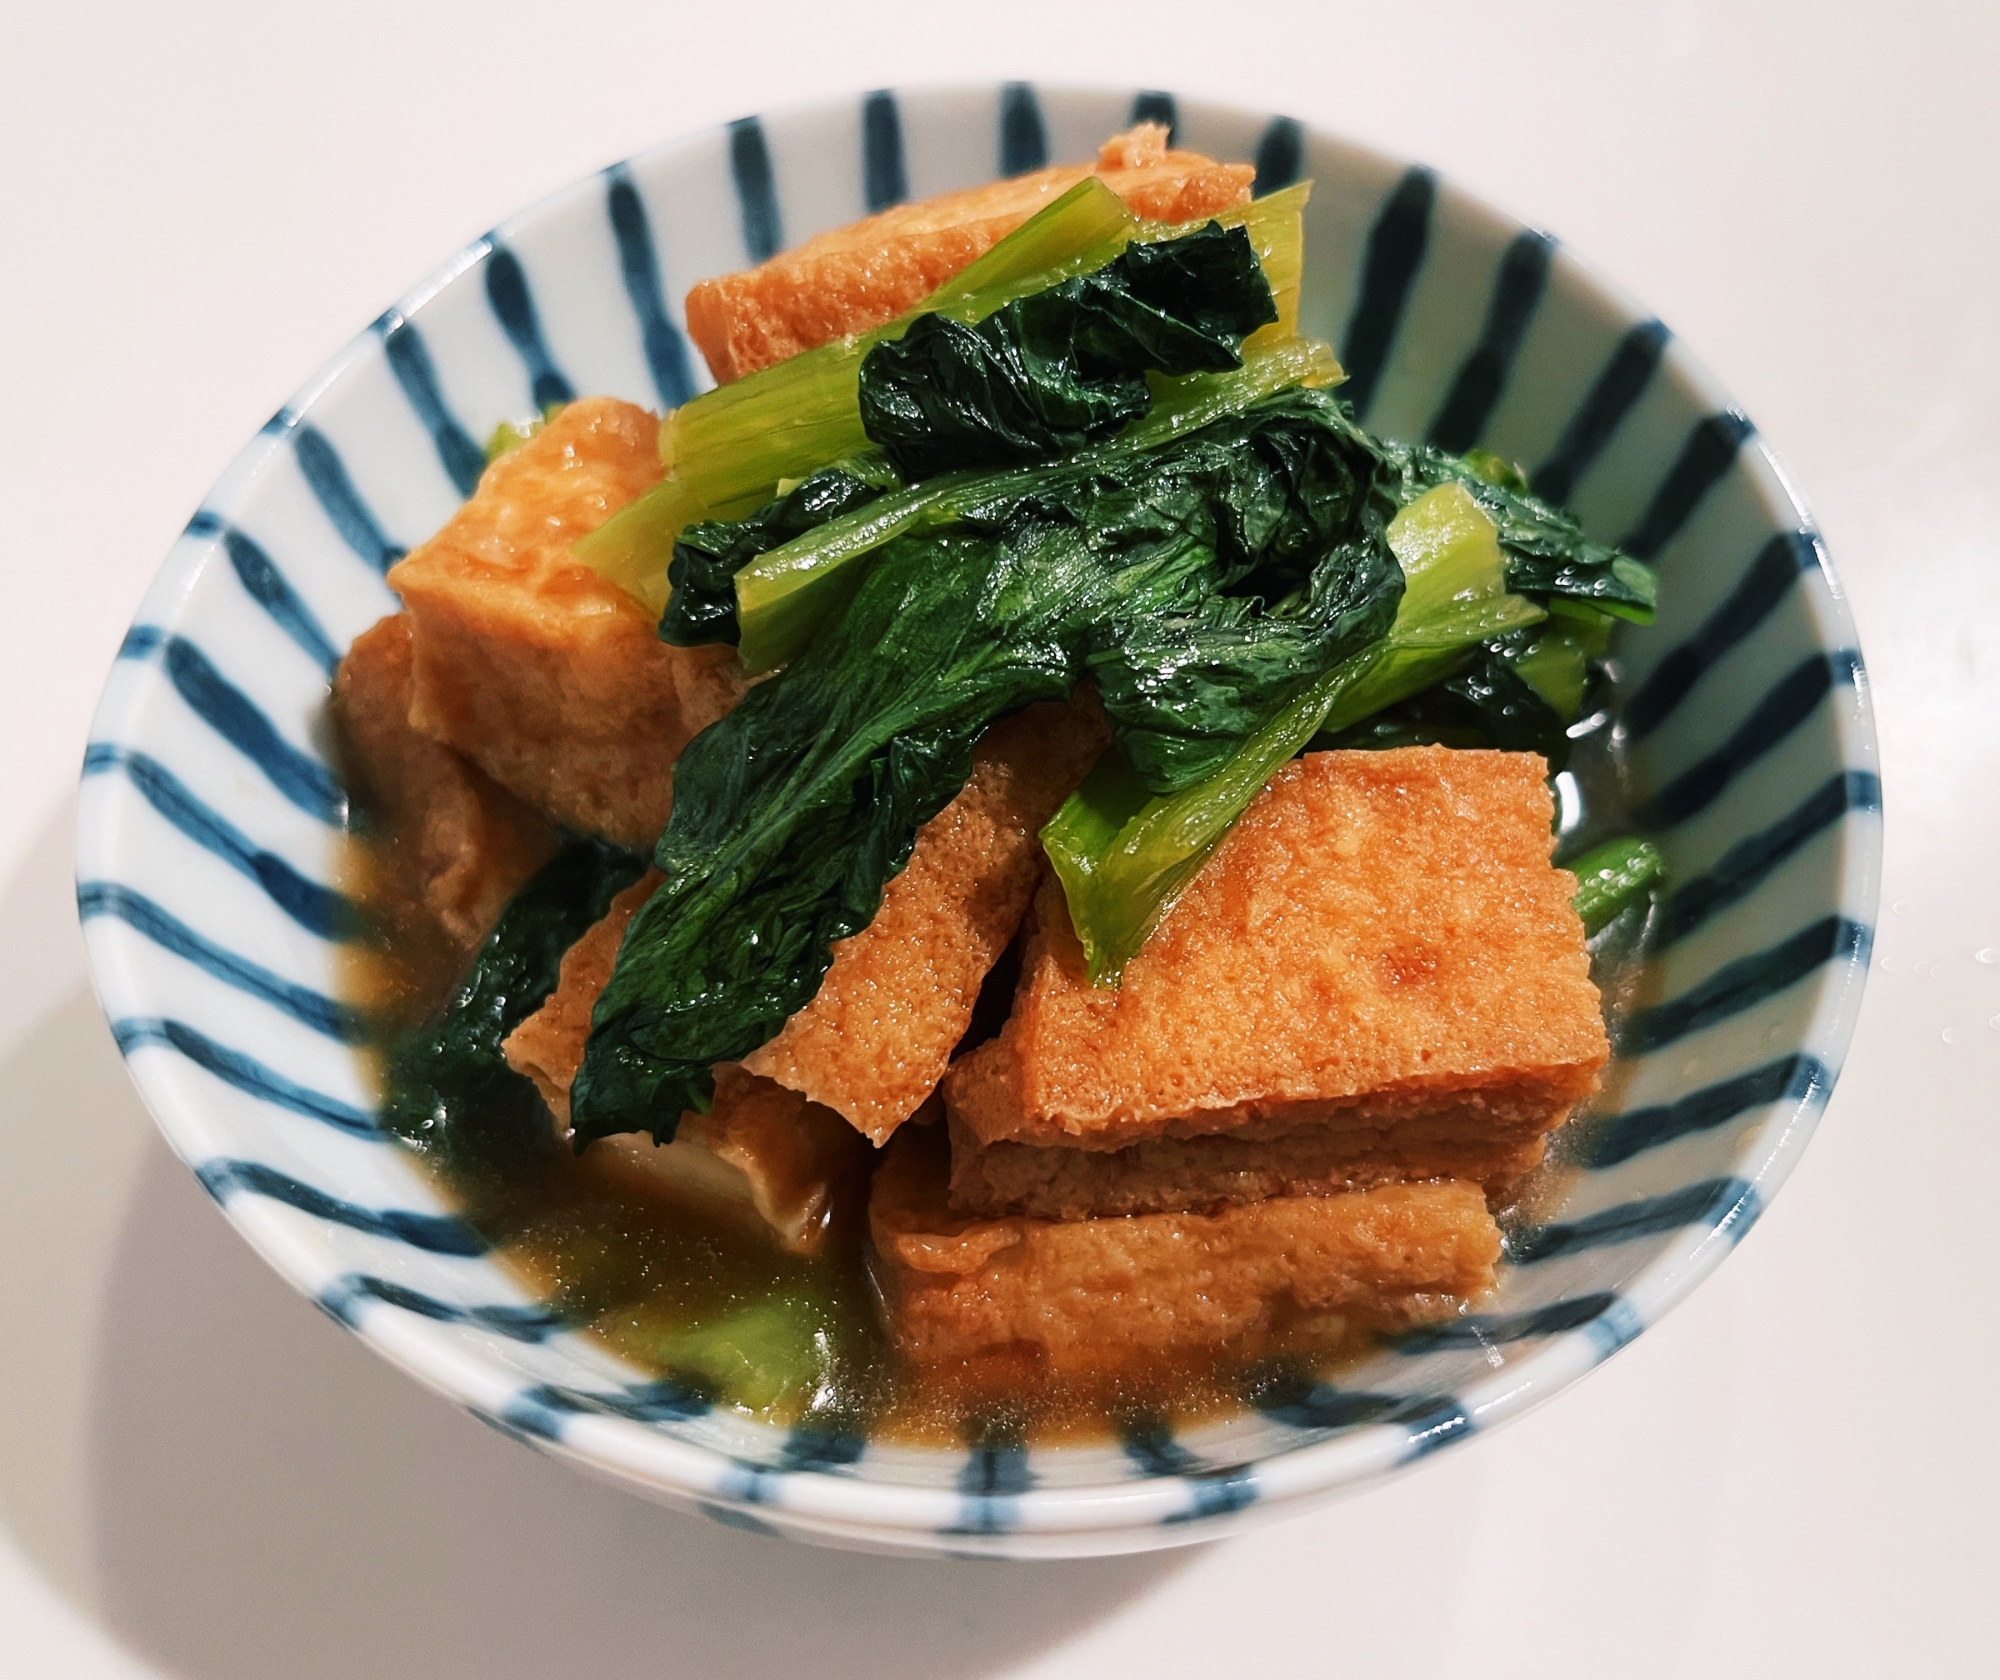 小松菜と厚揚げの煮物